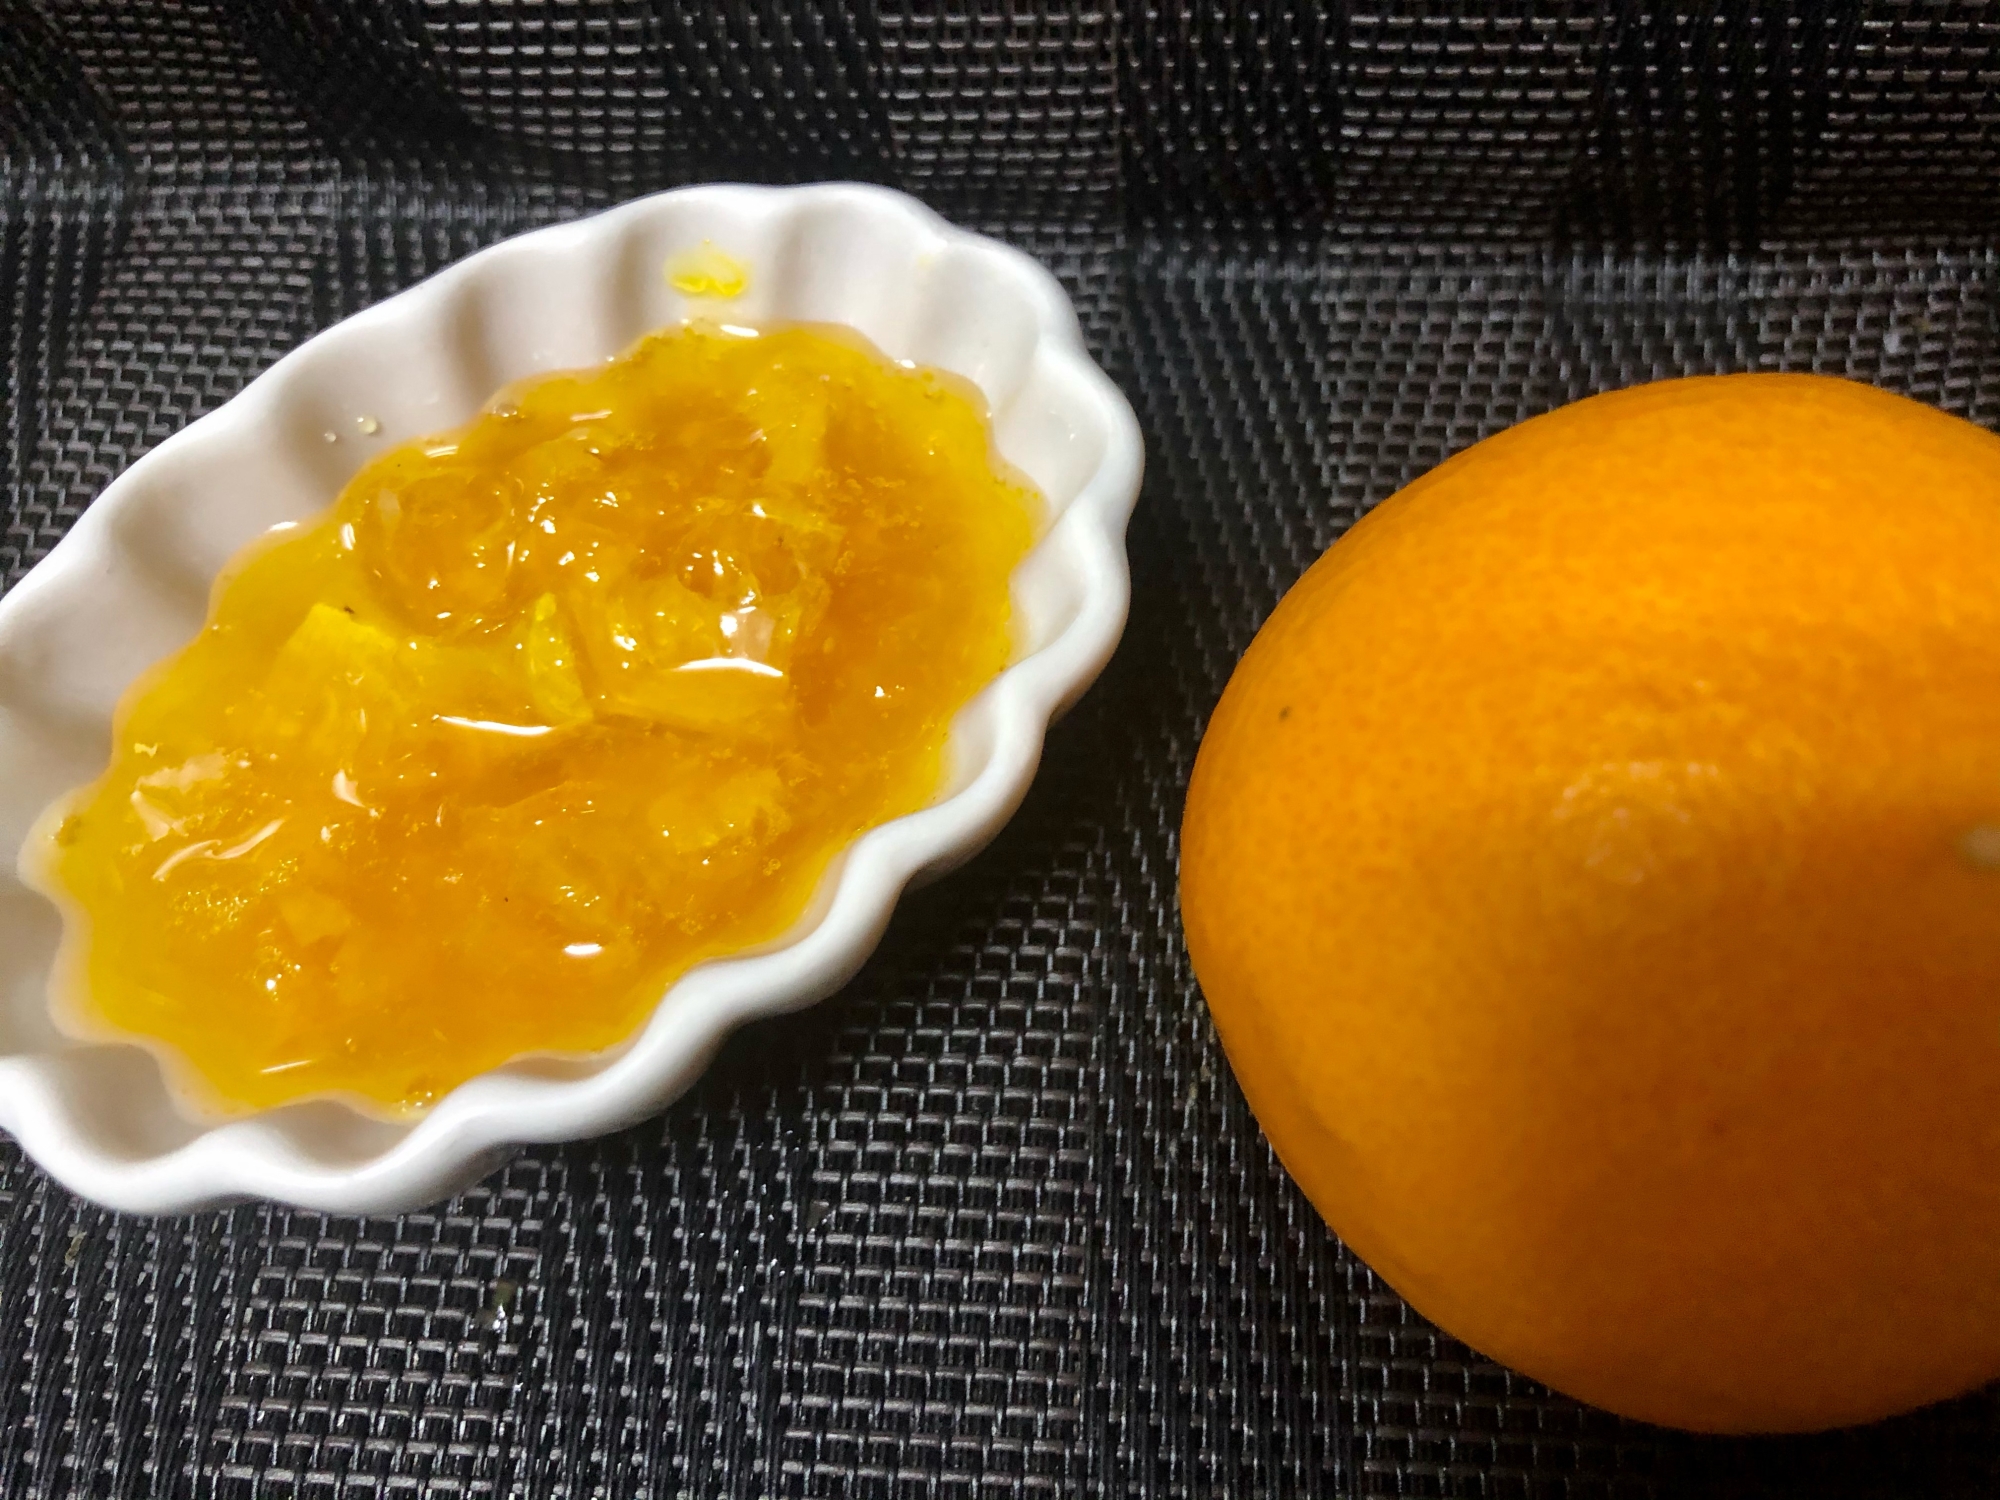 レンジで簡単☆フレッシュオレンジソース